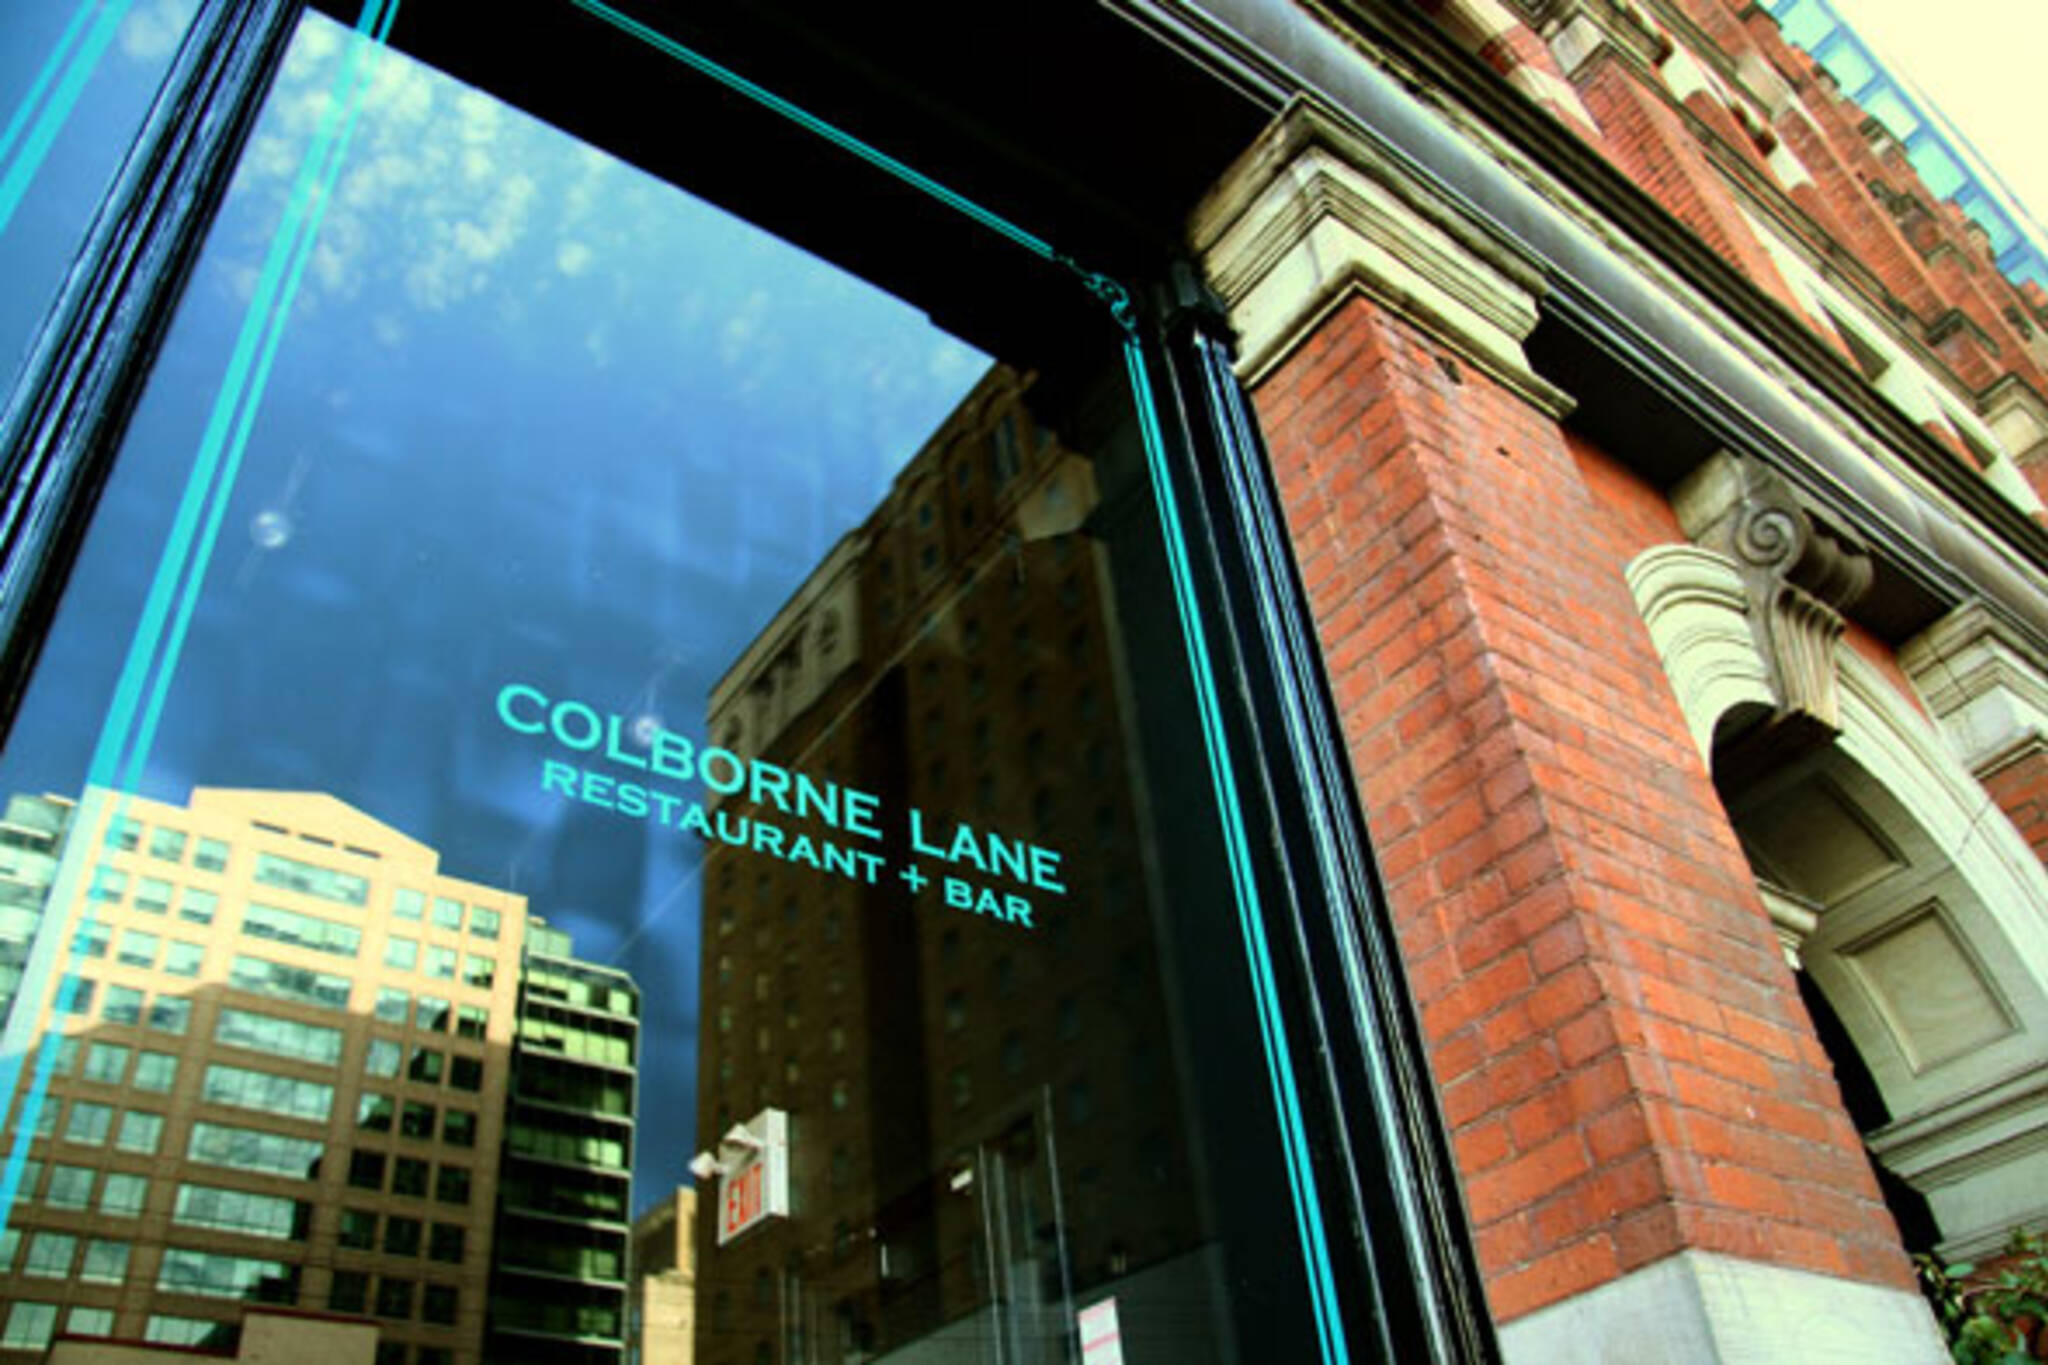 Colborne Lane